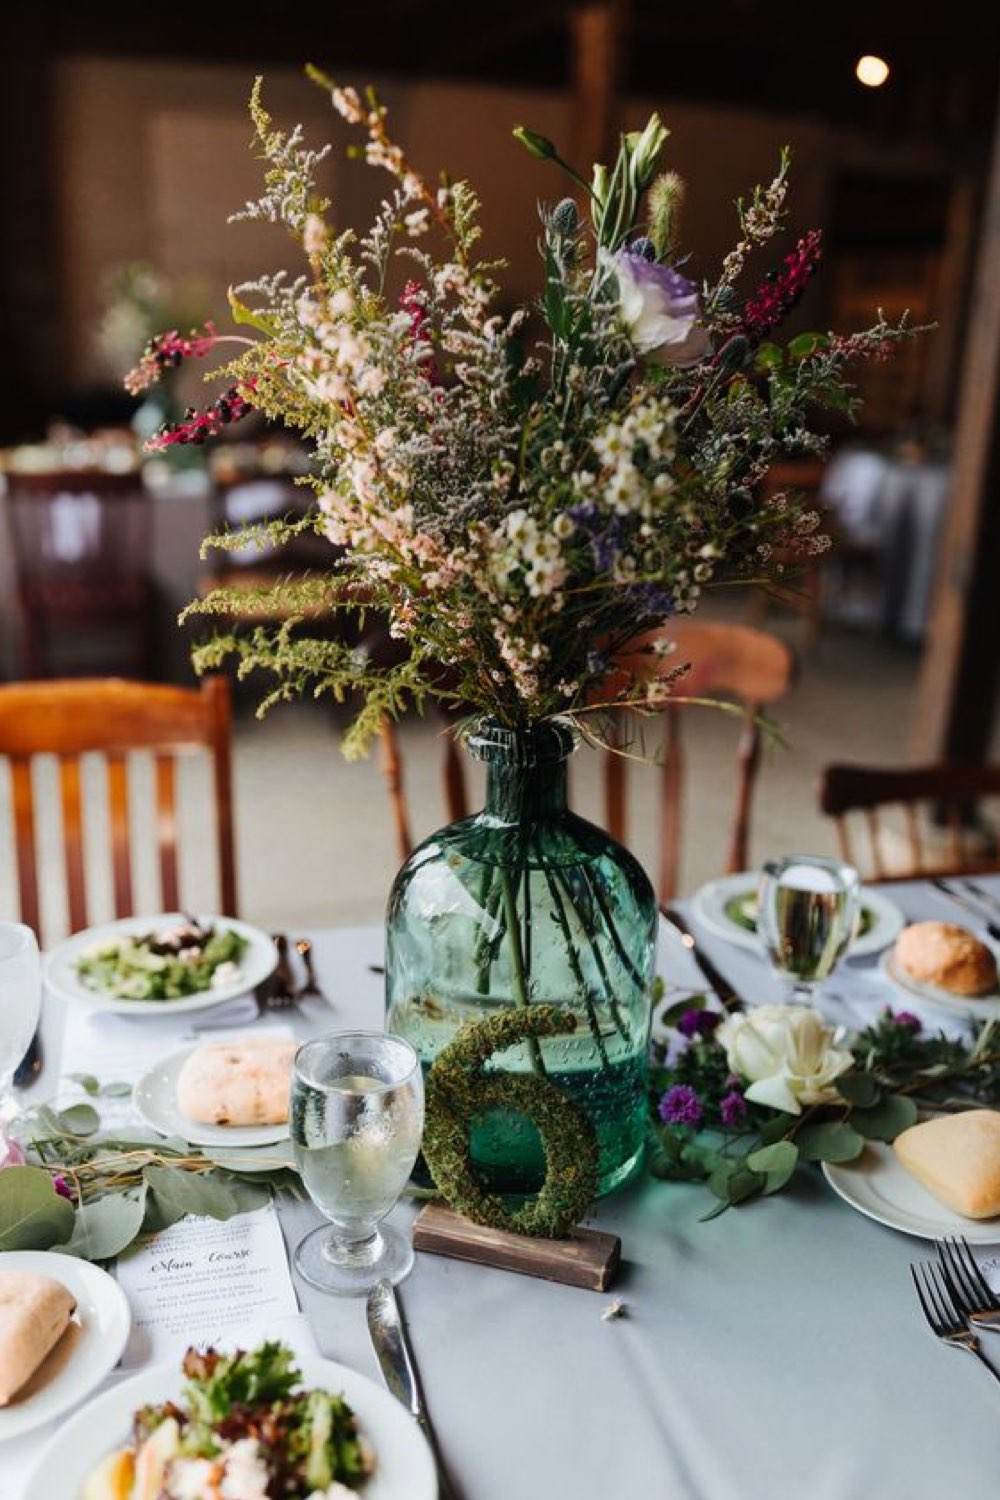 decoration mariage champetre romantique jarre Dame Jeanne bleu centre de table vase fleur des champs séchées